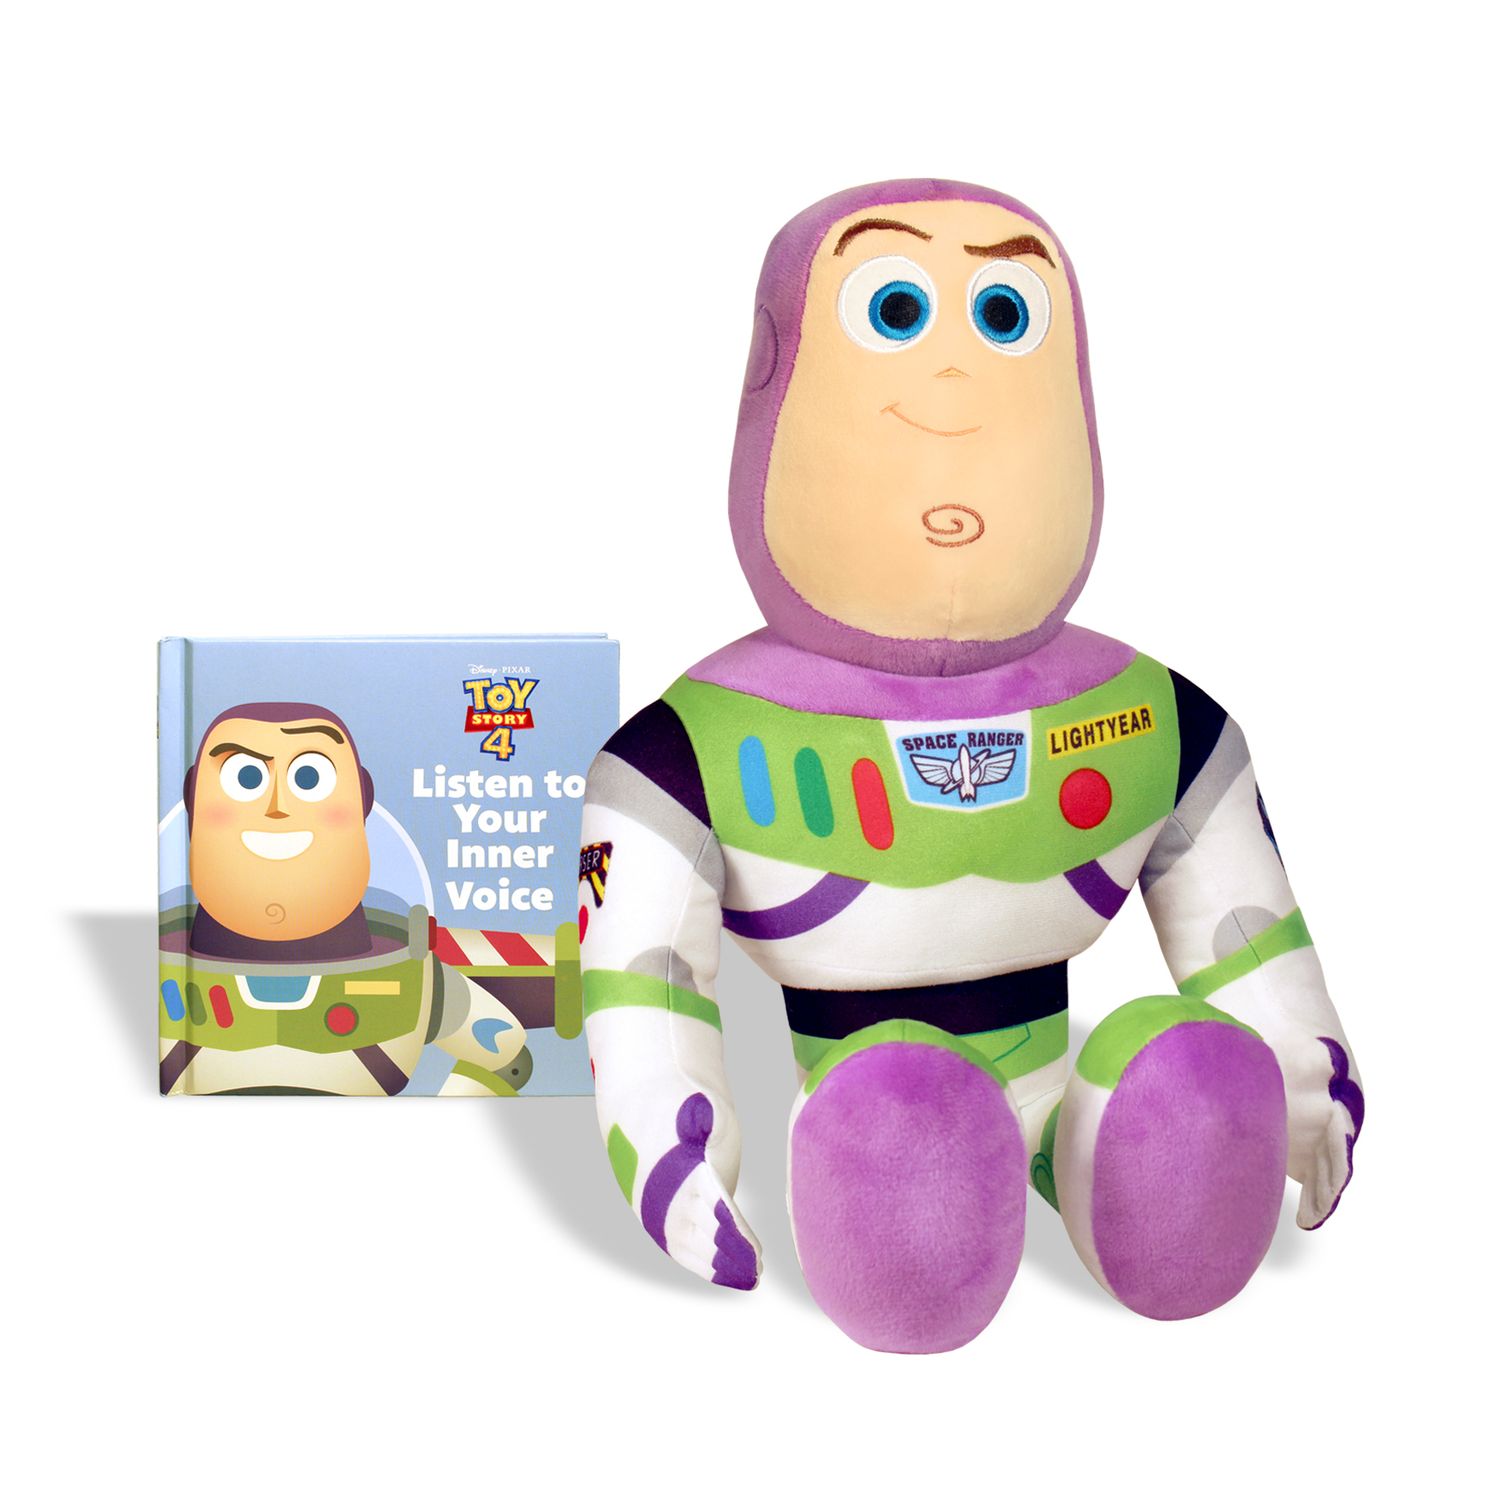 buzz lightyear stuffed toy